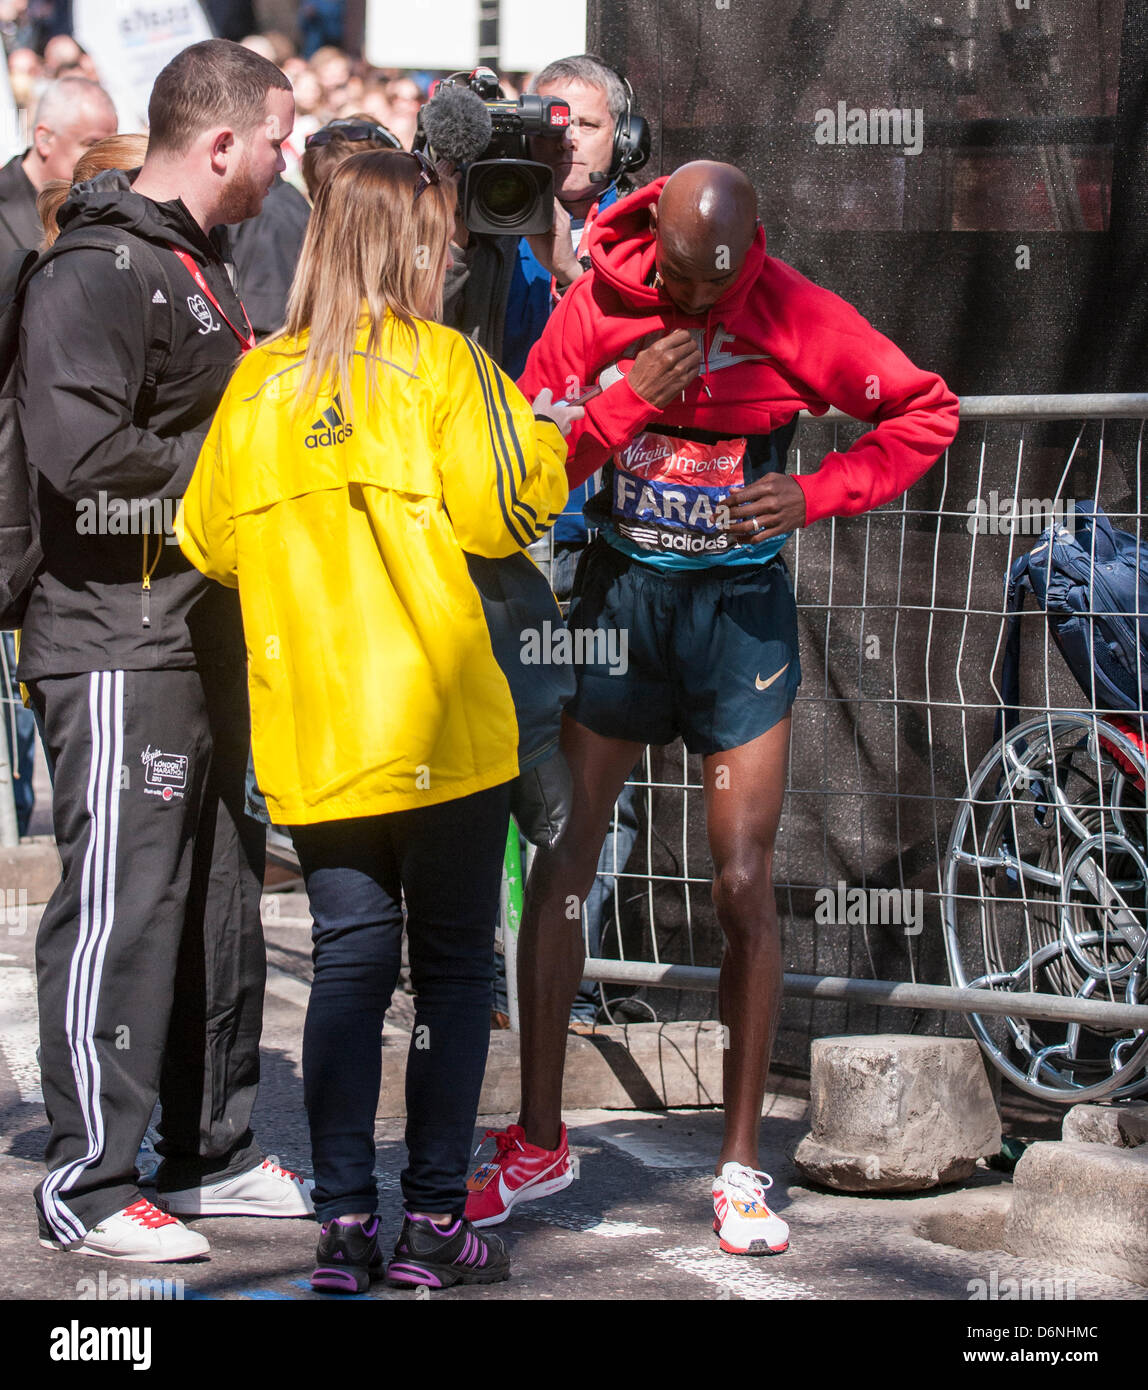 Londres, East Smithfield, 21 avril 2013. Mo Farah, le somalien né et de l'équipe Go double médaillé aux Jeux Olympiques de dans le 5 000m et 10 000m en 2012 à Londres, met son sweat du promoteur après avoir terminé sa course, juste avant de m 13. Avant la course Farah avait dit qu'il voulait rester avec l'élite hommes coureurs de marathon jusqu'à mi-chemin et il a fait exactement cela. Banque D'Images